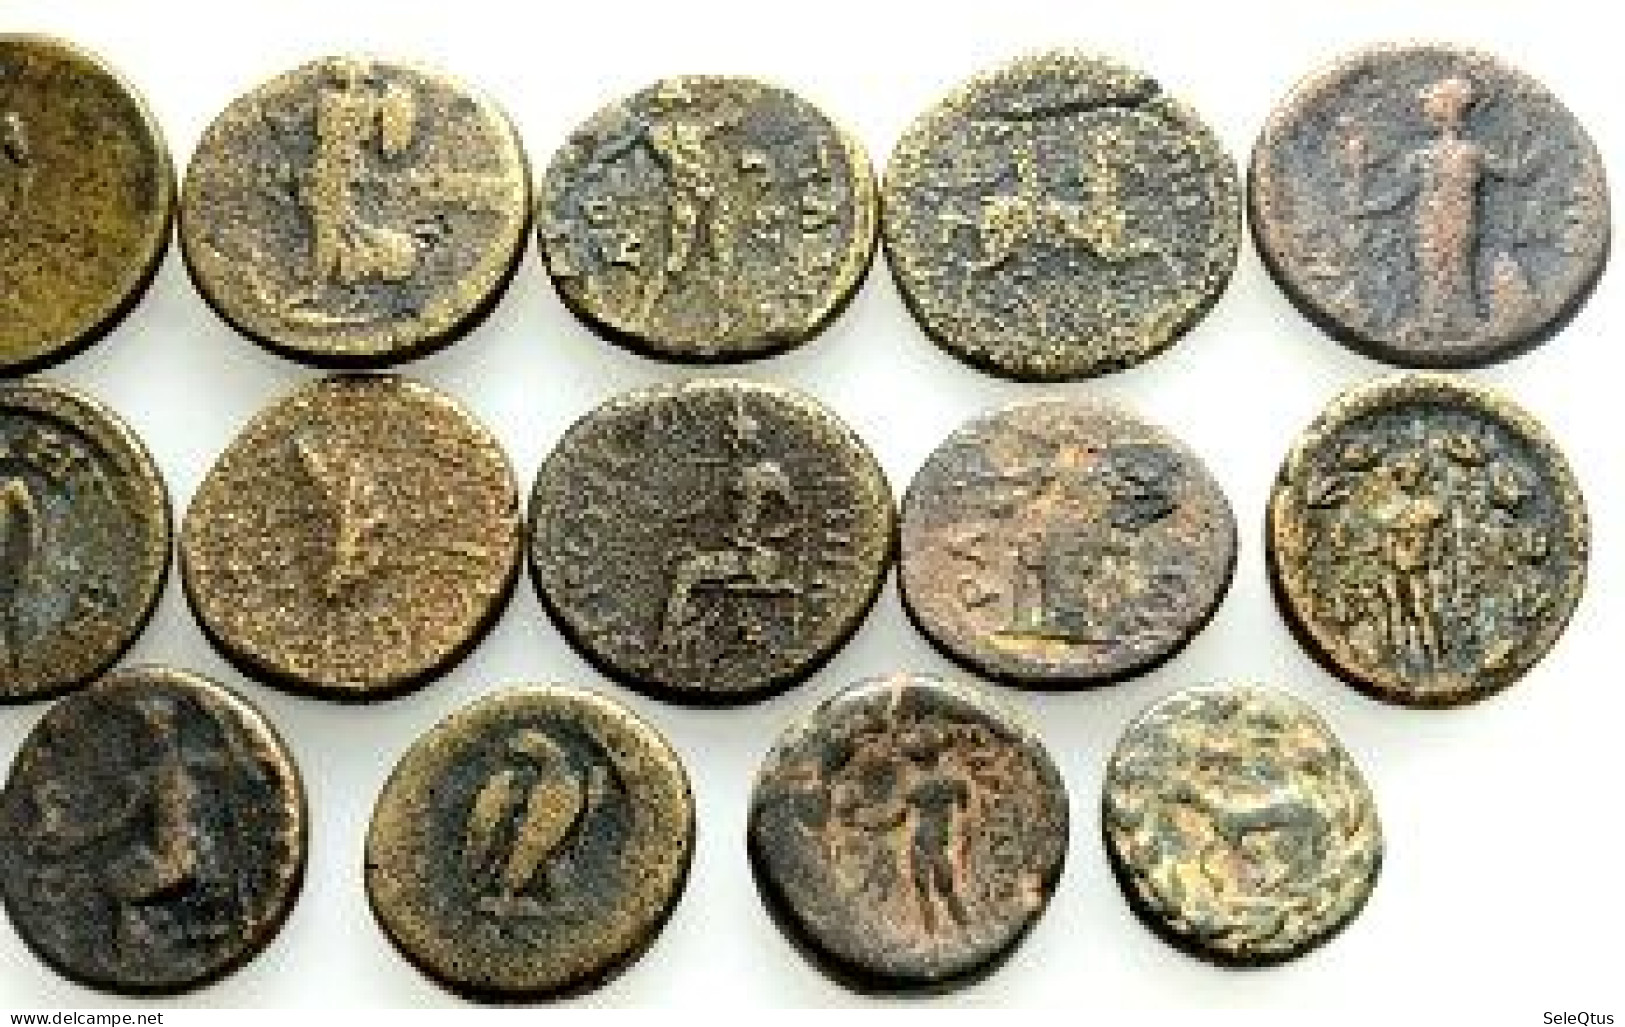 Monedas Antiguas - Ancient Coins (A143-014-009-0821) - Sets